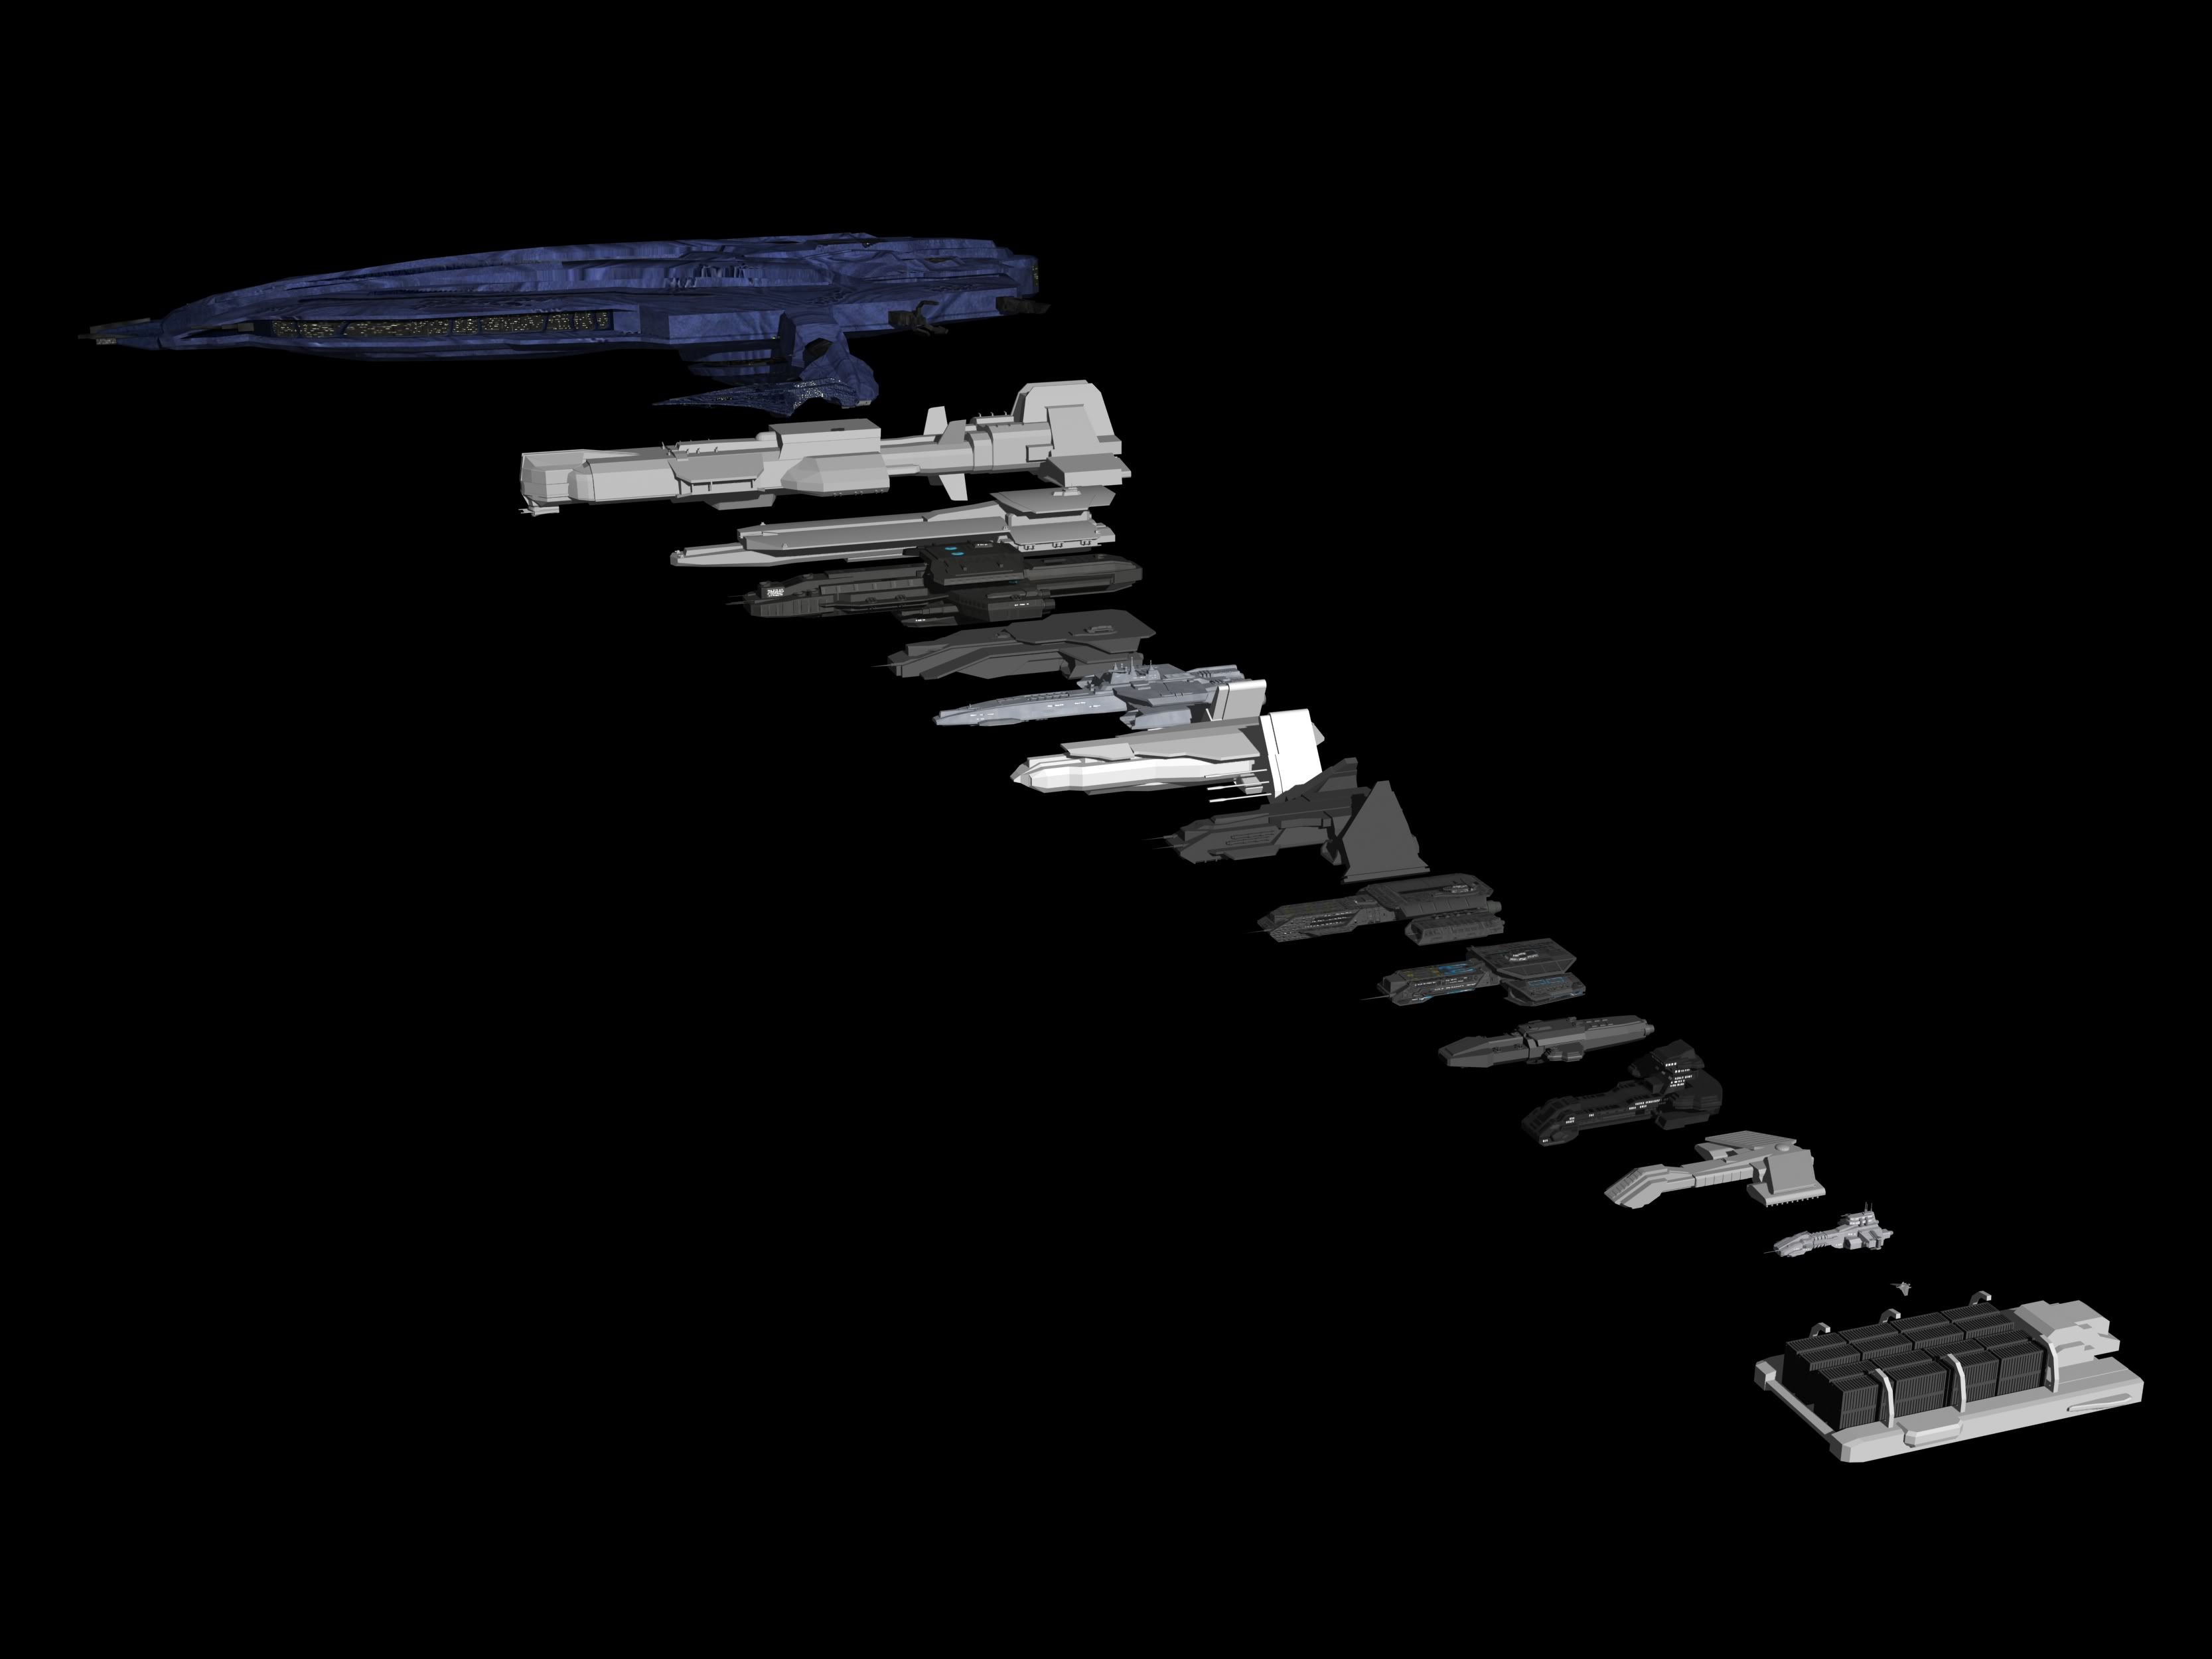 Звездные врата, космические корабли, транспортные средства, 3D моделирование - обои на рабочий стол